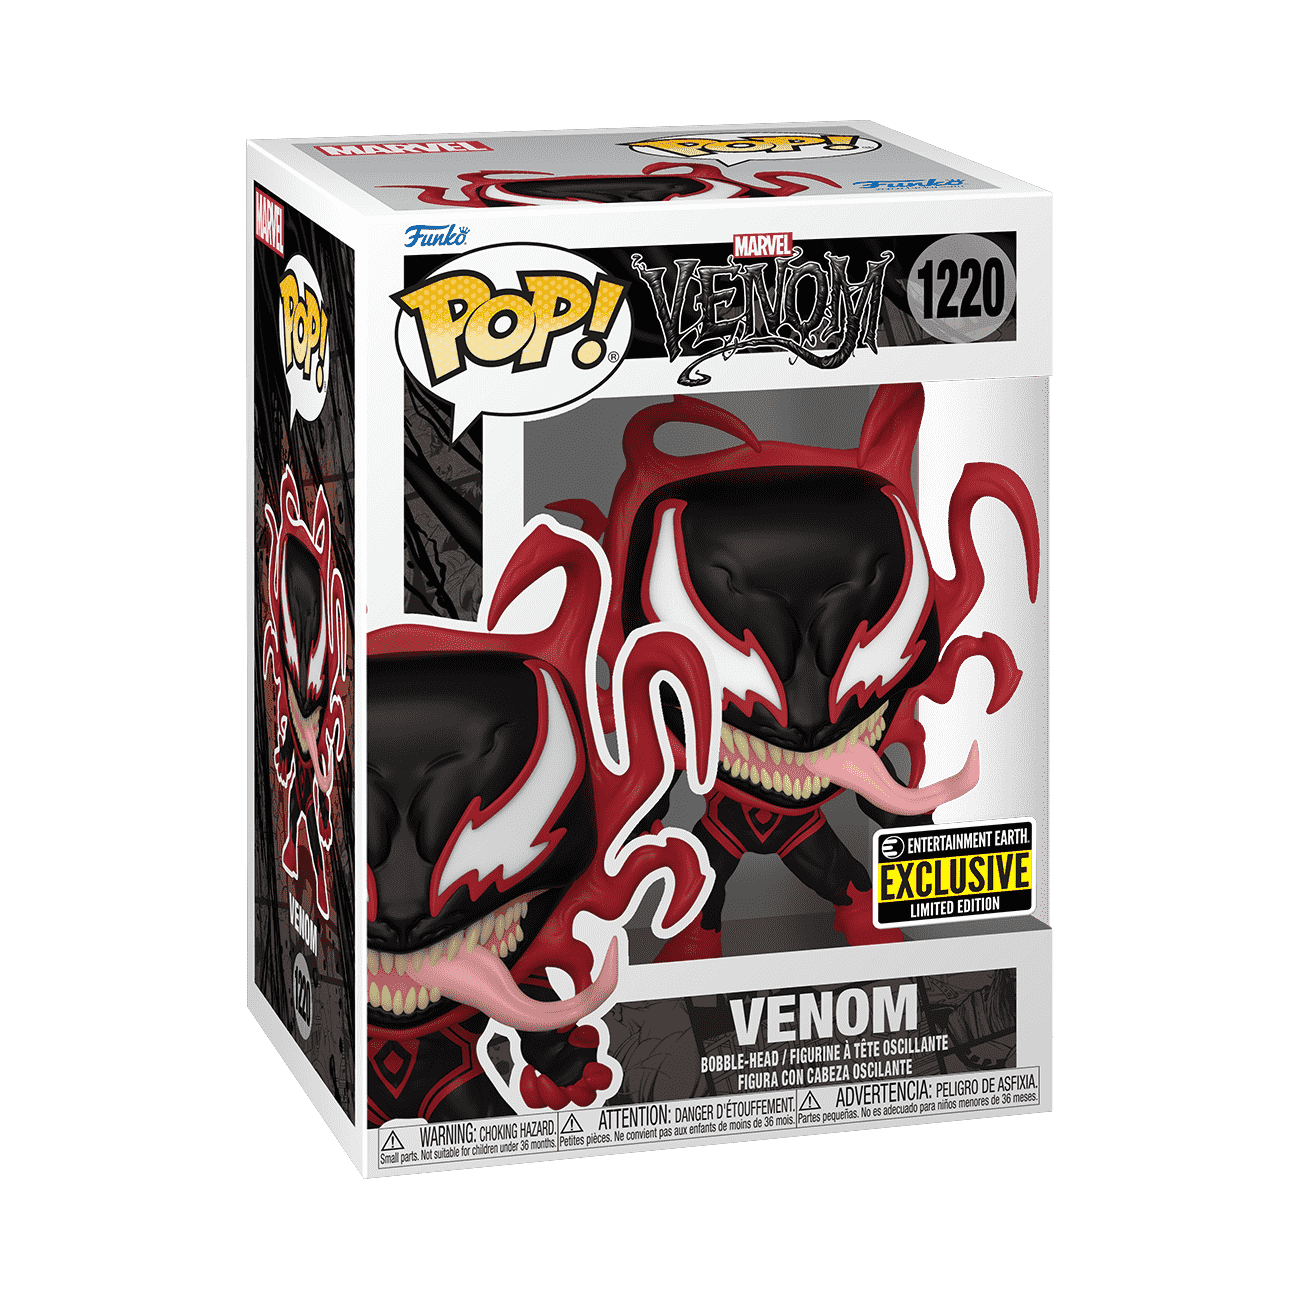 Buy Pop! Venom Miles Morales at Funko.